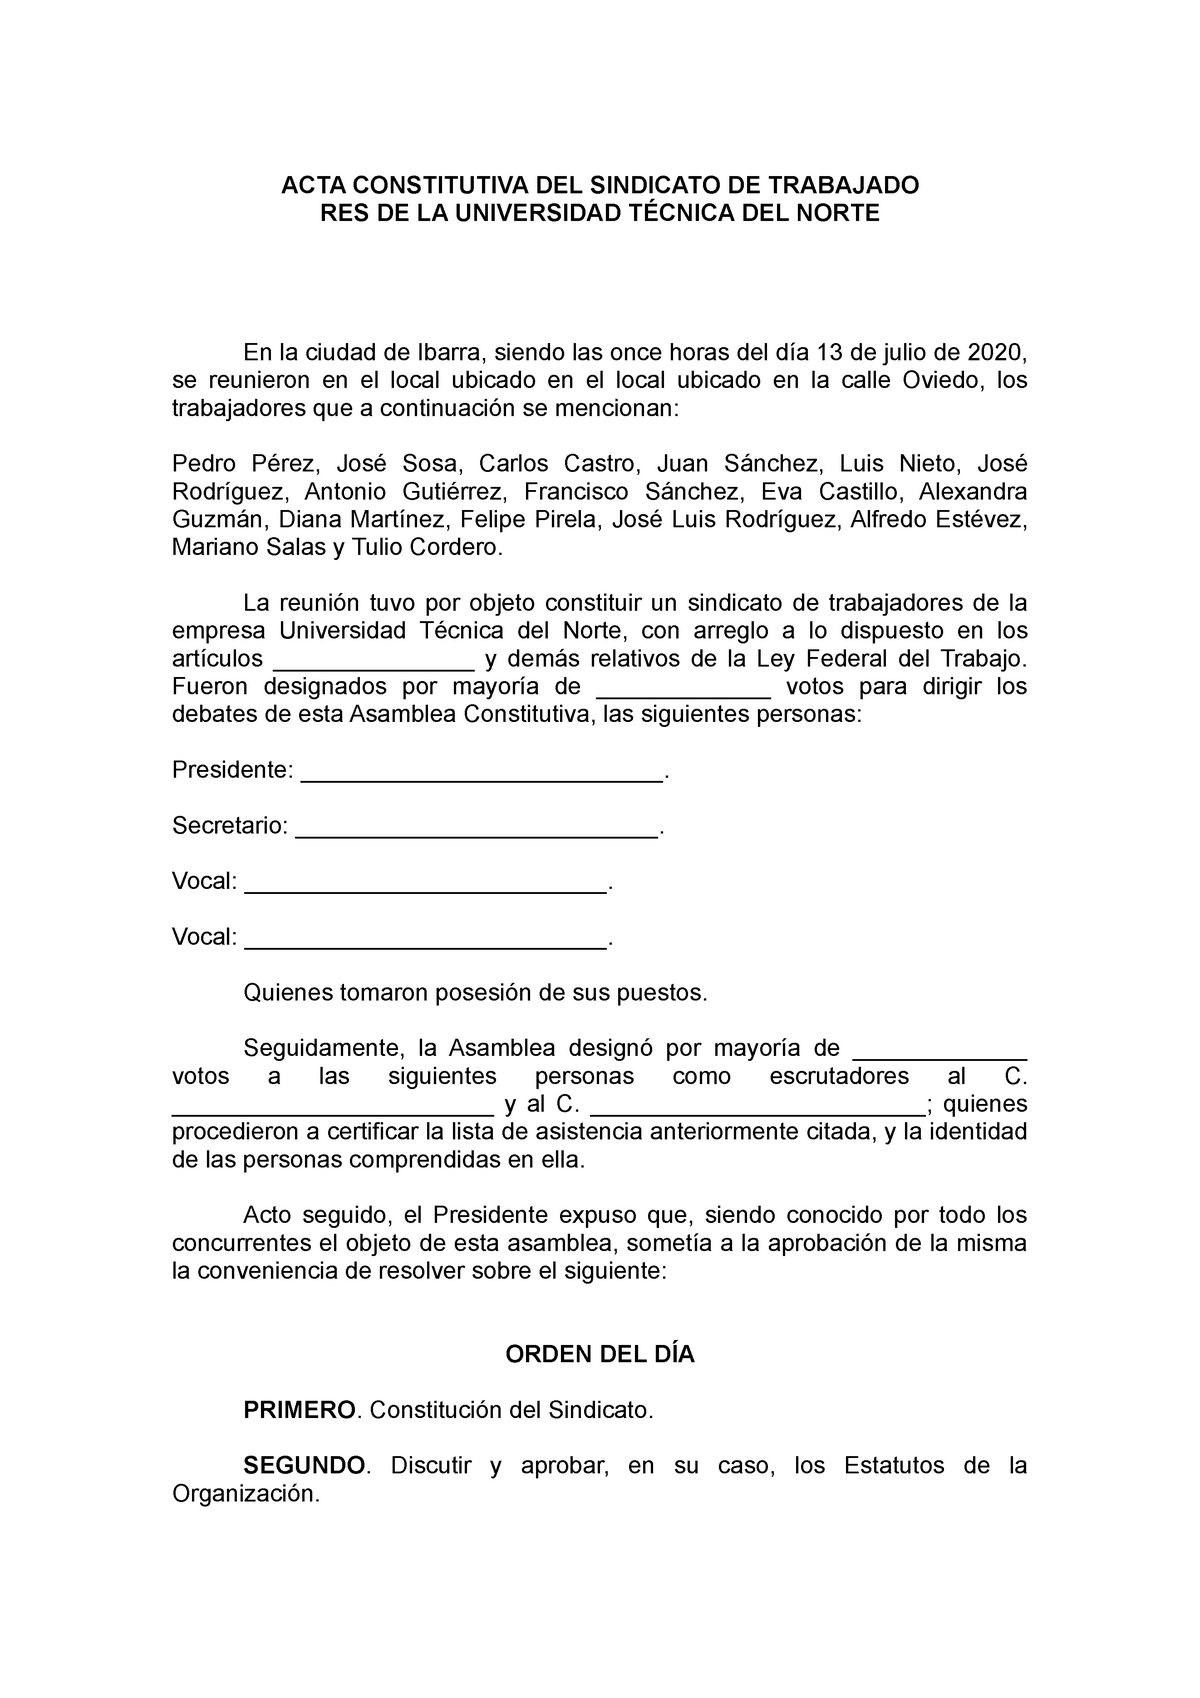 ACTA DE Asamblea Constitutiva DE Sindica - ACTA CONSTITUTIVA DEL SINDICATO  DE TRABAJADO RES DE LA - Studocu